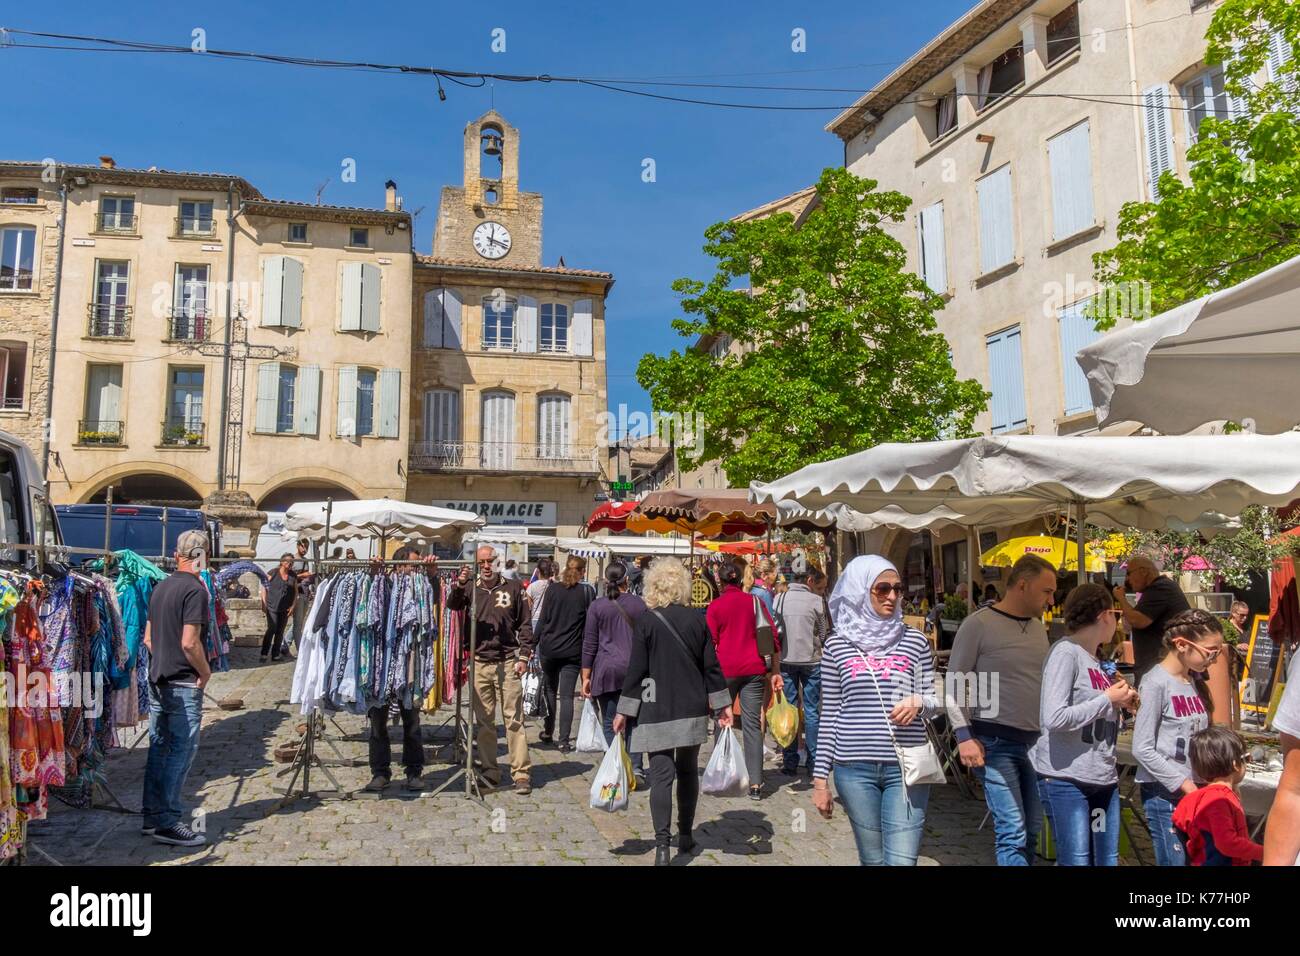 France, Gard, Bagnols sur Ceze, market day Stock Photo